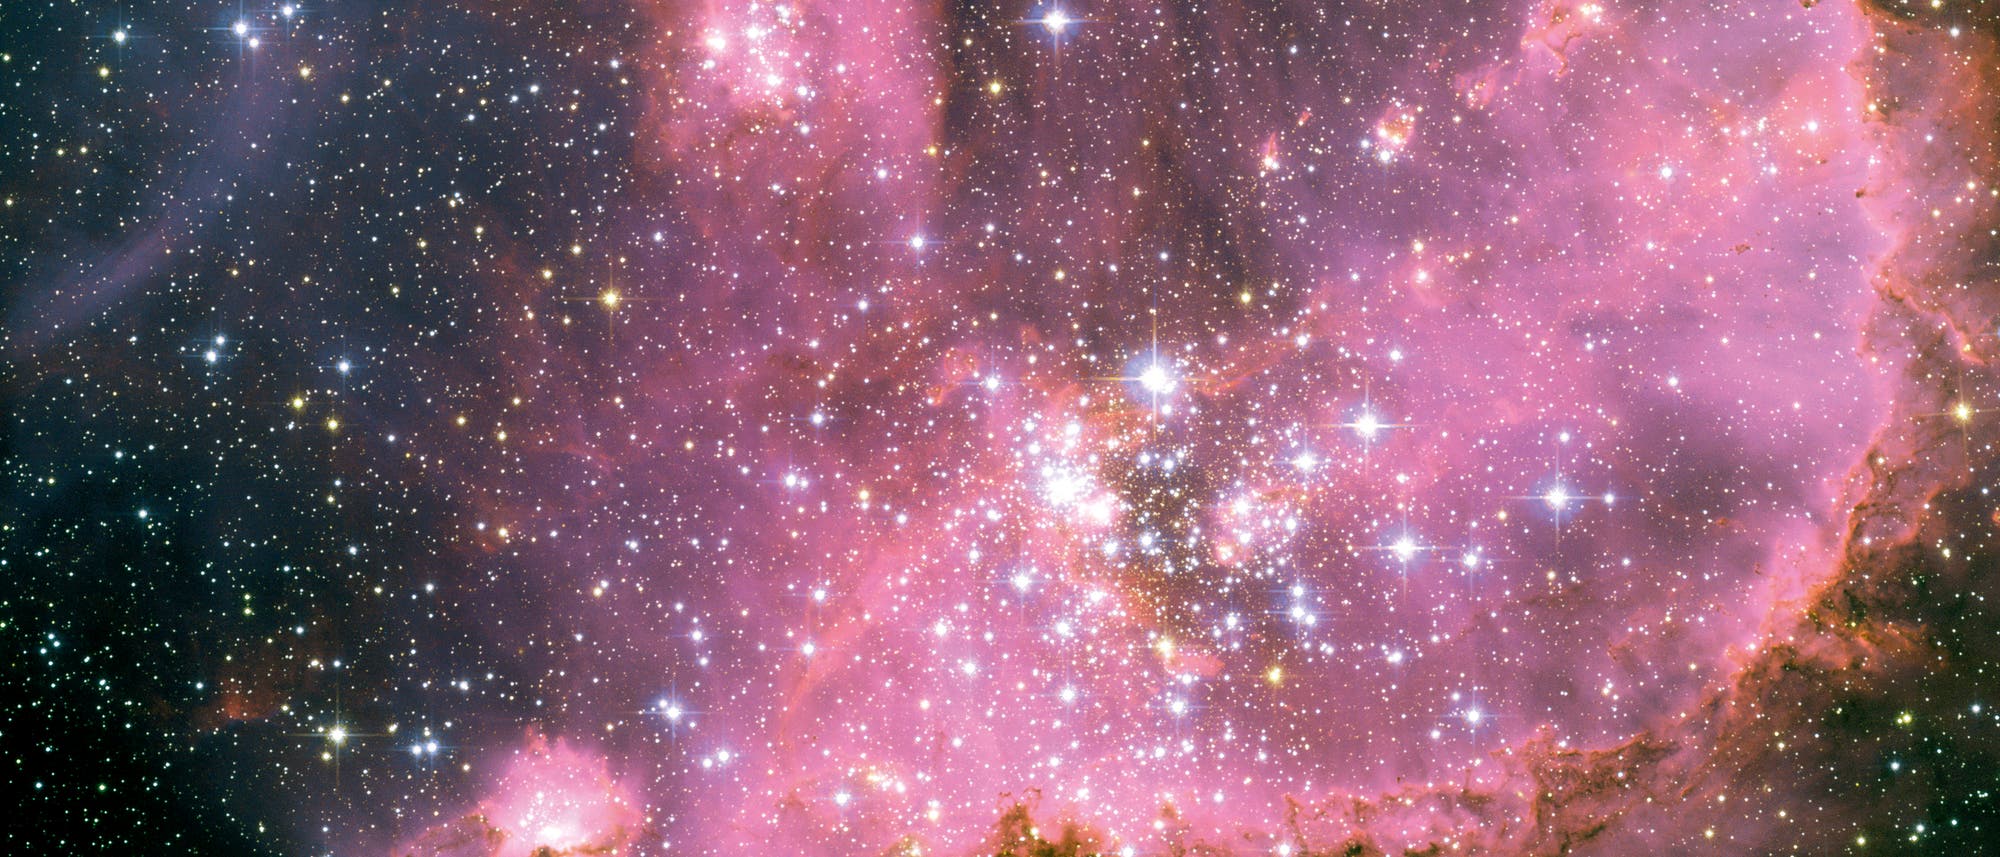 Ein offener Sternenhaufen, in dem sich Sterne mit unterschiedlichen Massen befinden.